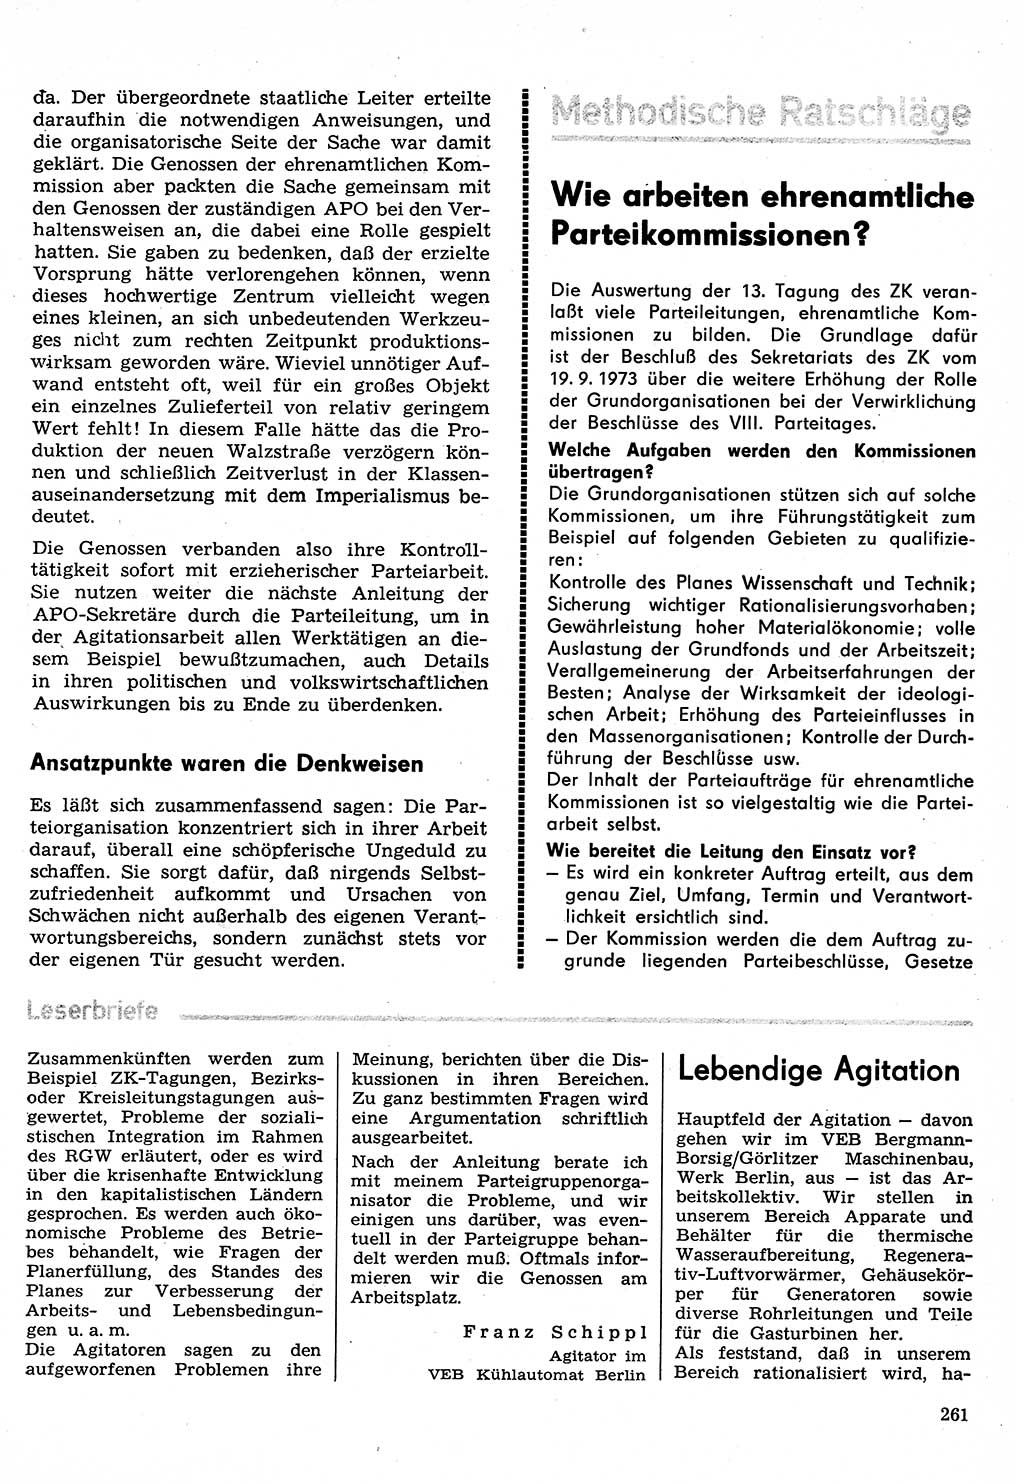 Neuer Weg (NW), Organ des Zentralkomitees (ZK) der SED (Sozialistische Einheitspartei Deutschlands) für Fragen des Parteilebens, 30. Jahrgang [Deutsche Demokratische Republik (DDR)] 1975, Seite 261 (NW ZK SED DDR 1975, S. 261)